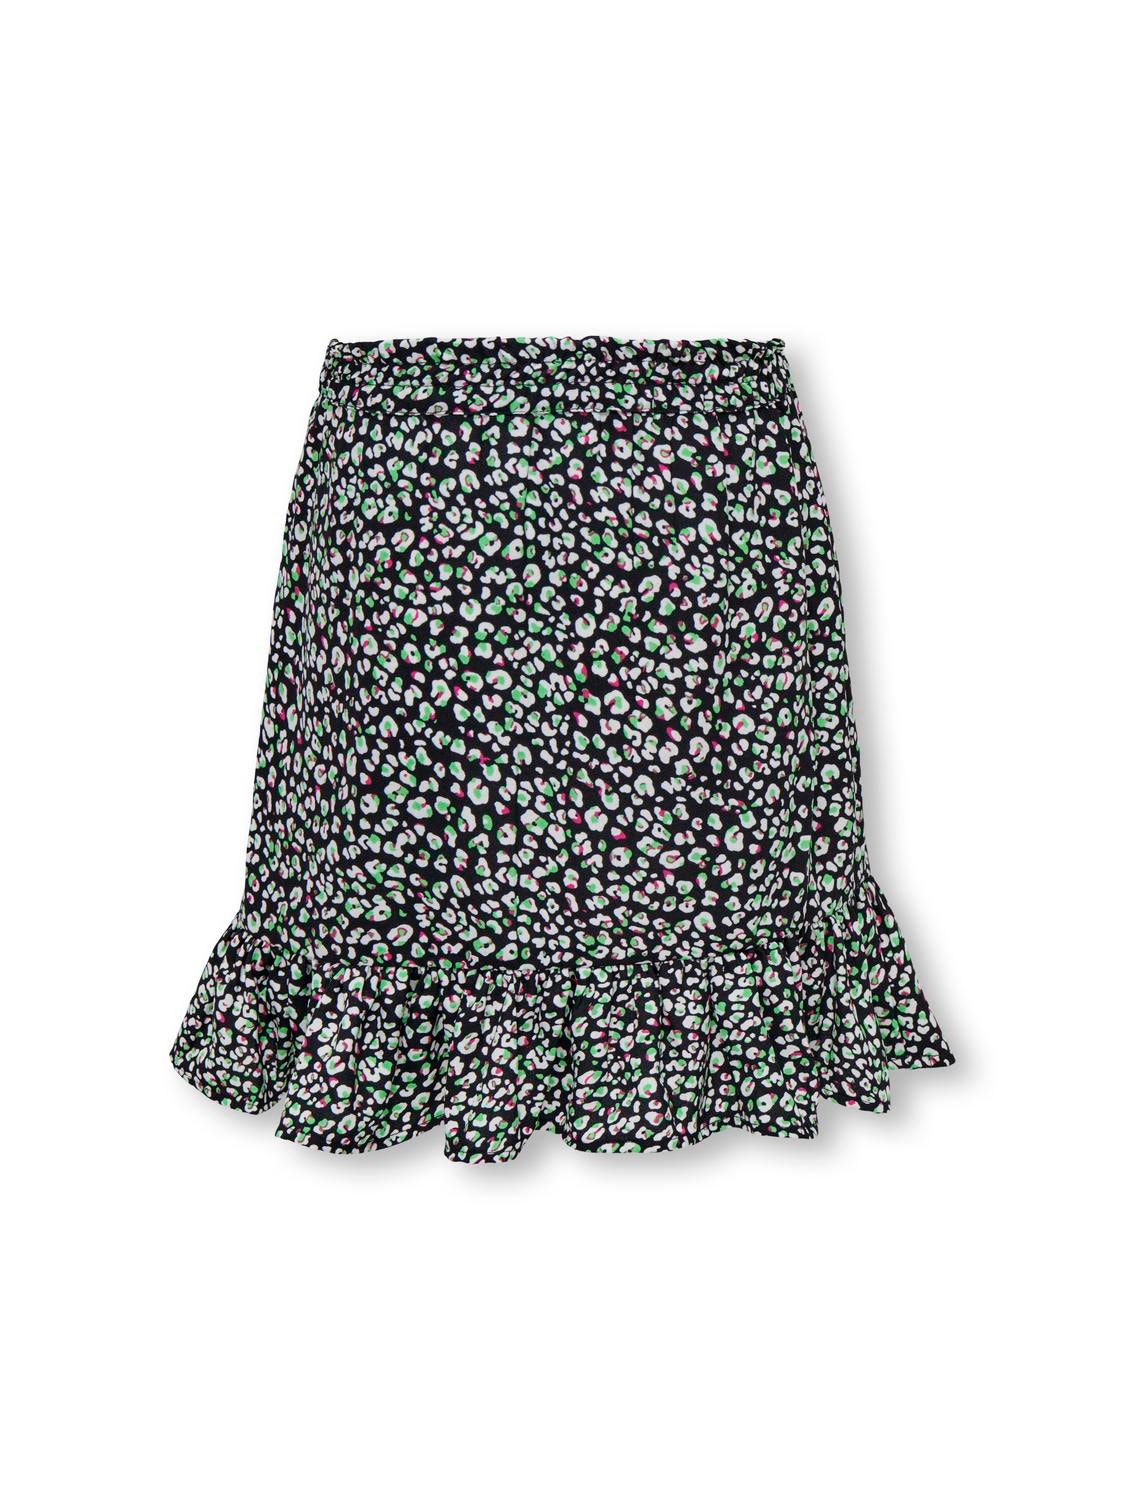 ONLY Short skirt -Black - 15300050